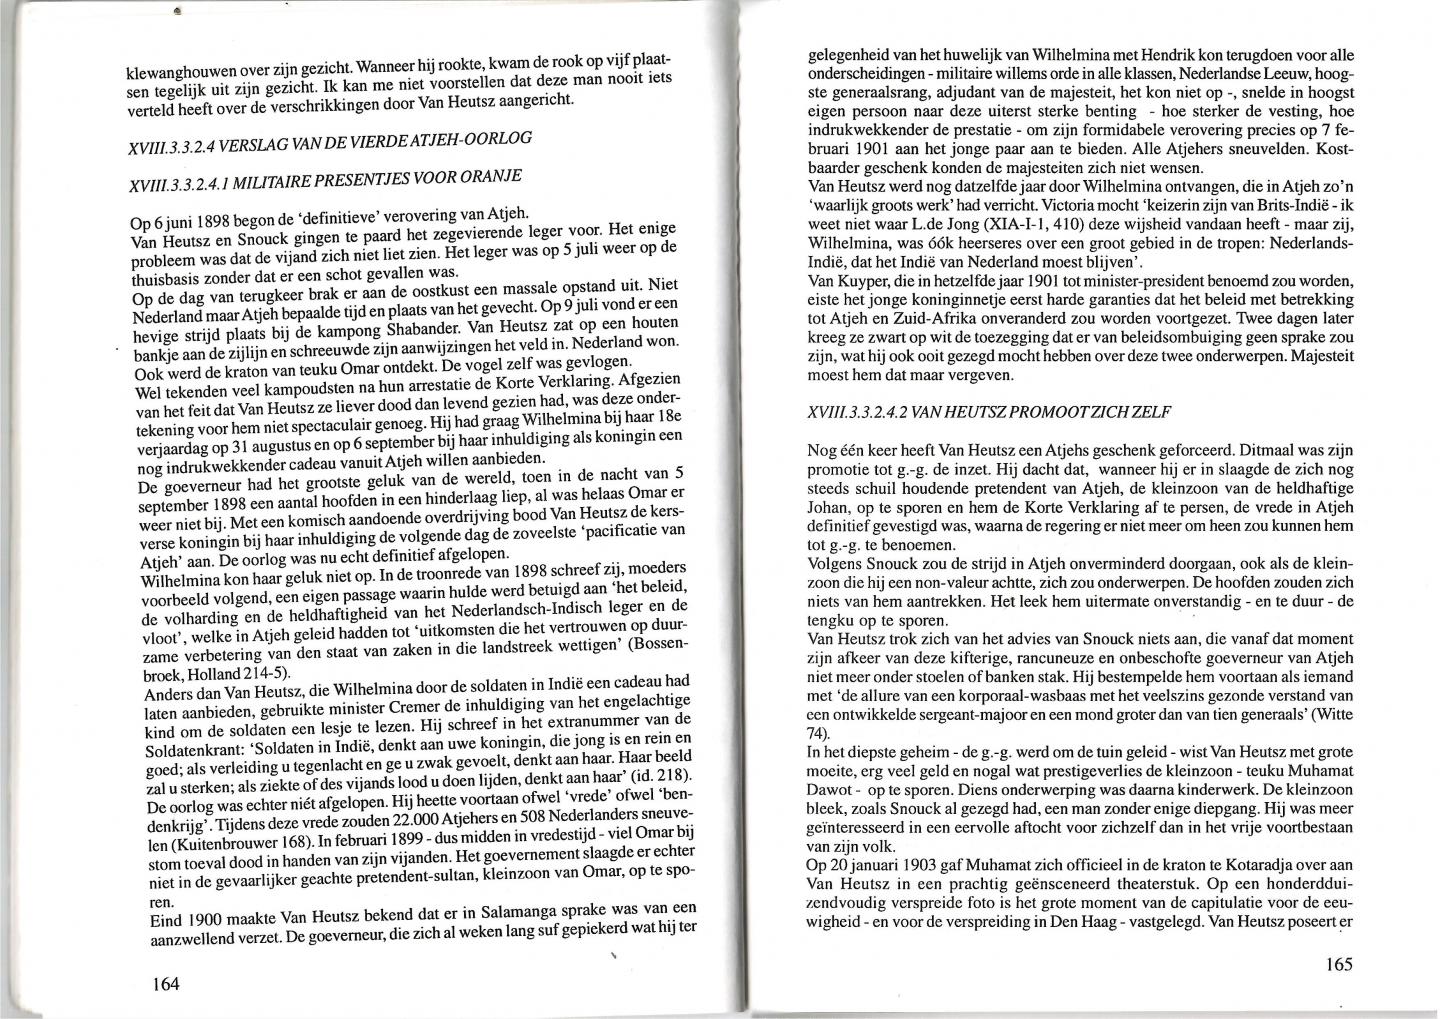 Lafeber, C.V. - Deel 11 Met klewang en knuppel. Vierhonderd jaar Nederlands-Indonesische betrekkingen.